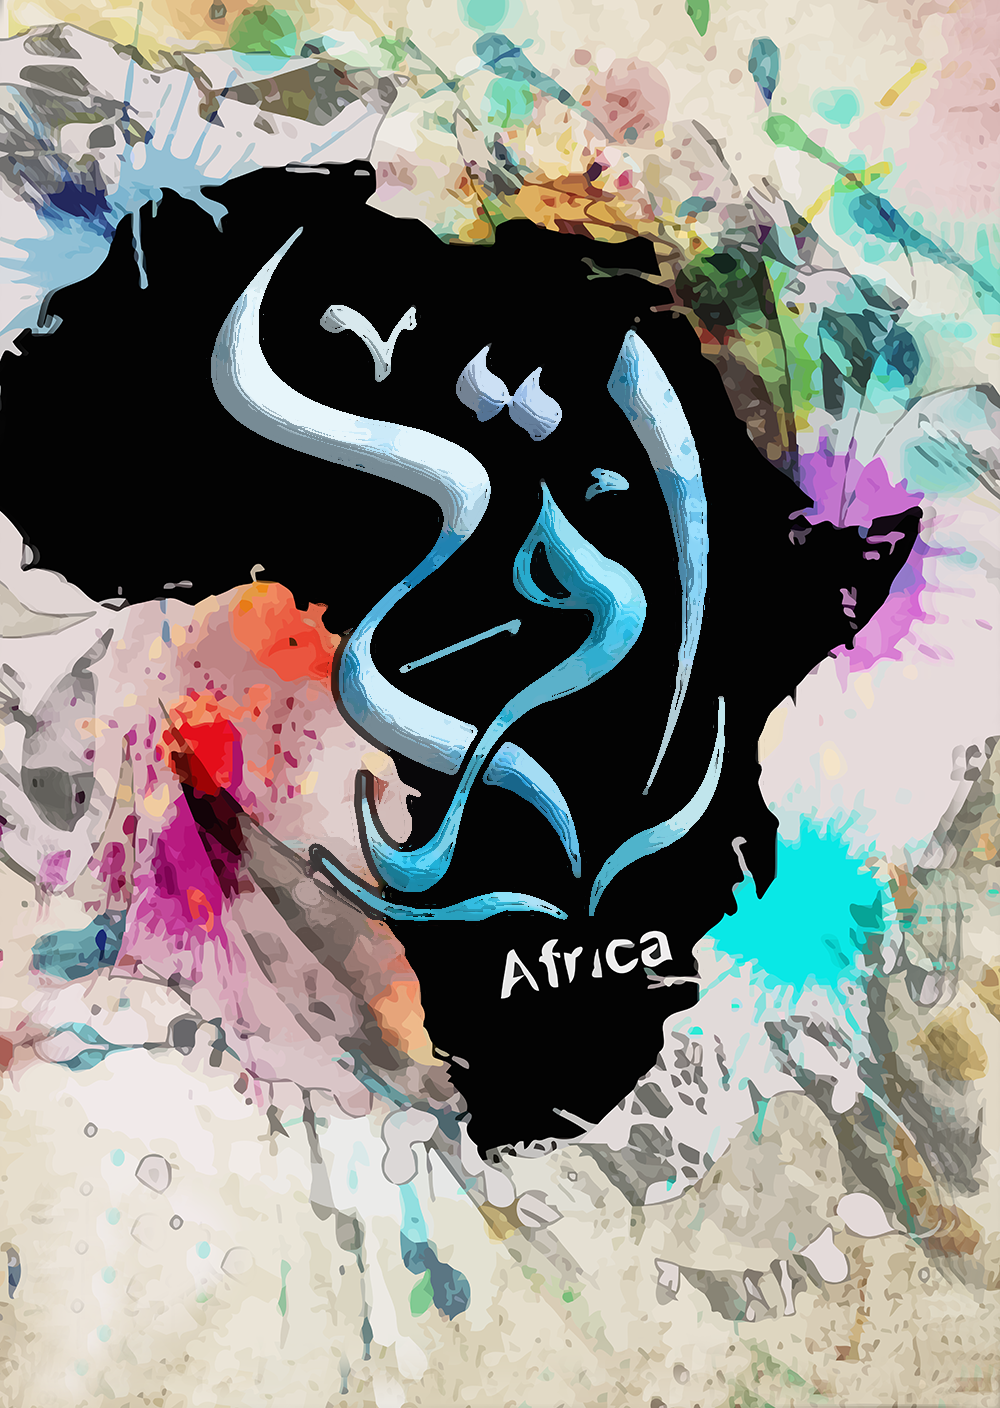 aftica egypt award Quran muslim design colors mdesigns read iqraa